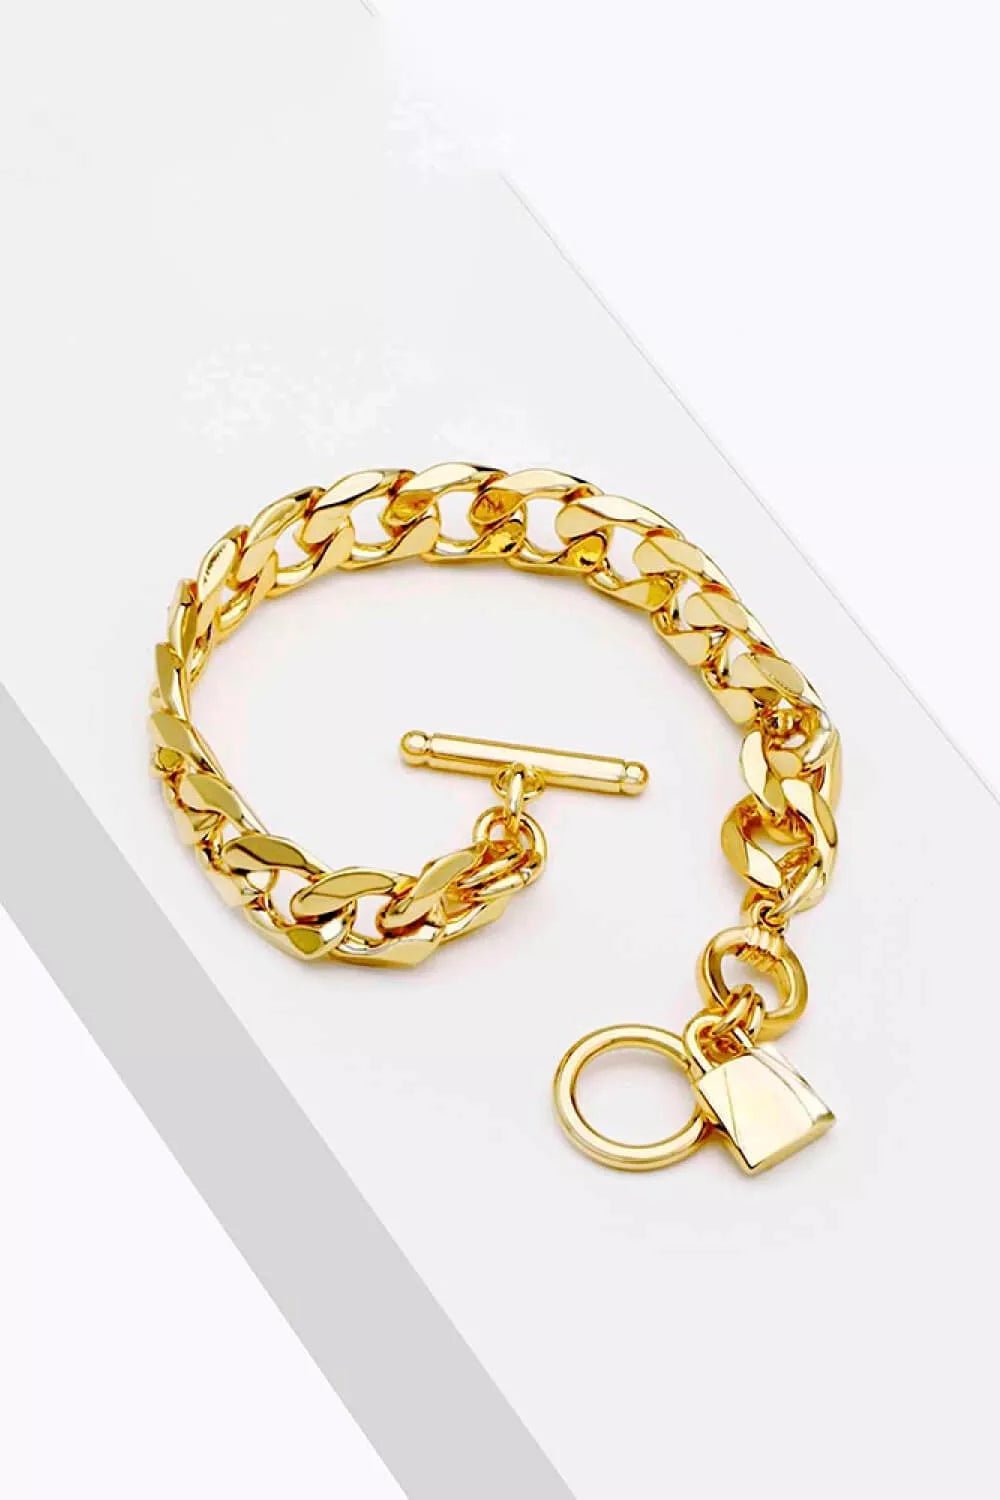 Lock Charm Toggle Clasp Bracelet - London's Closet Boutique